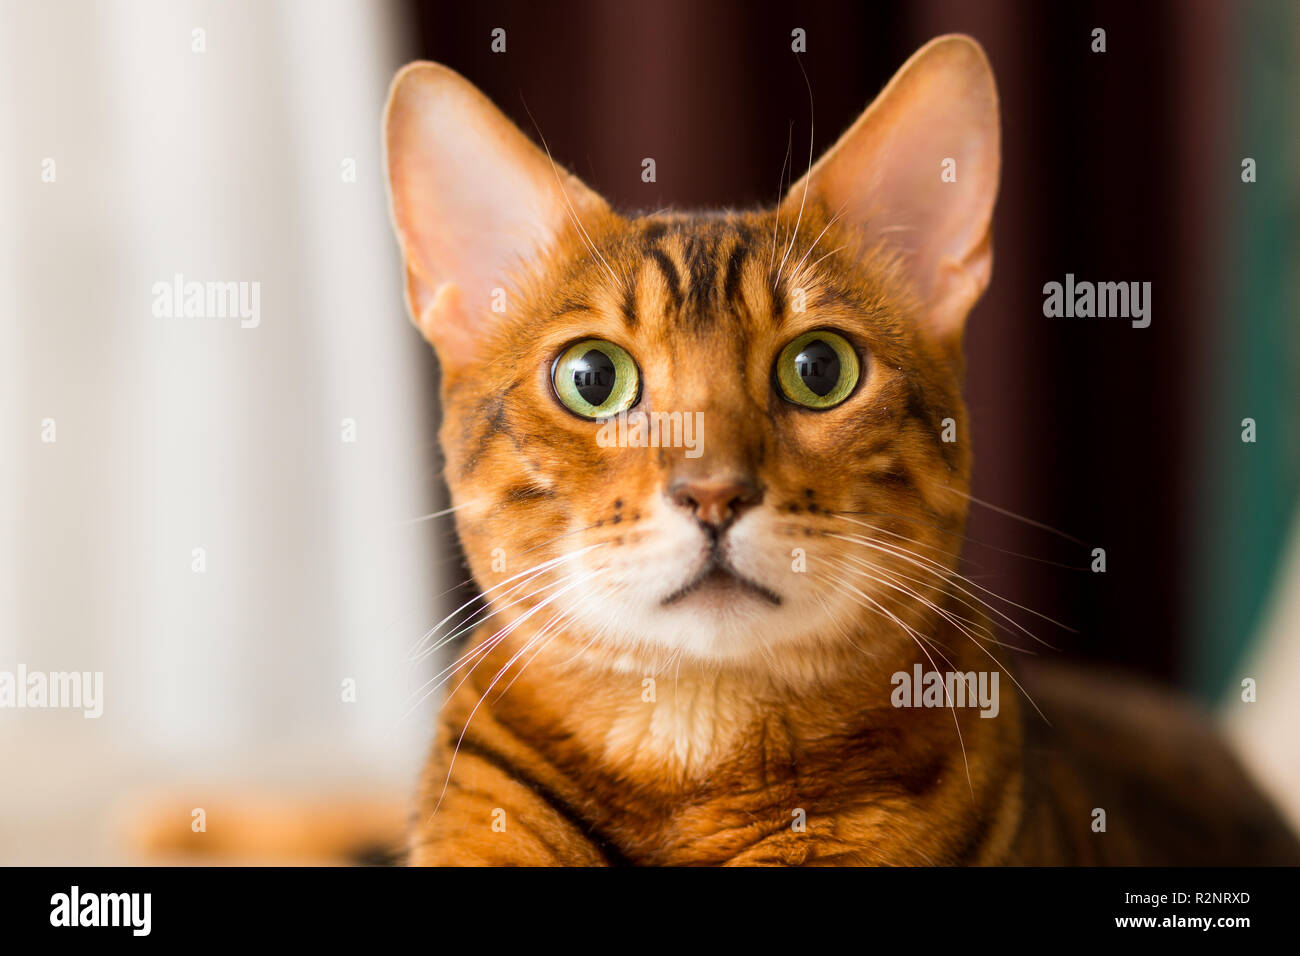 Adulto gatto bengalese ritratto di close-up Foto Stock